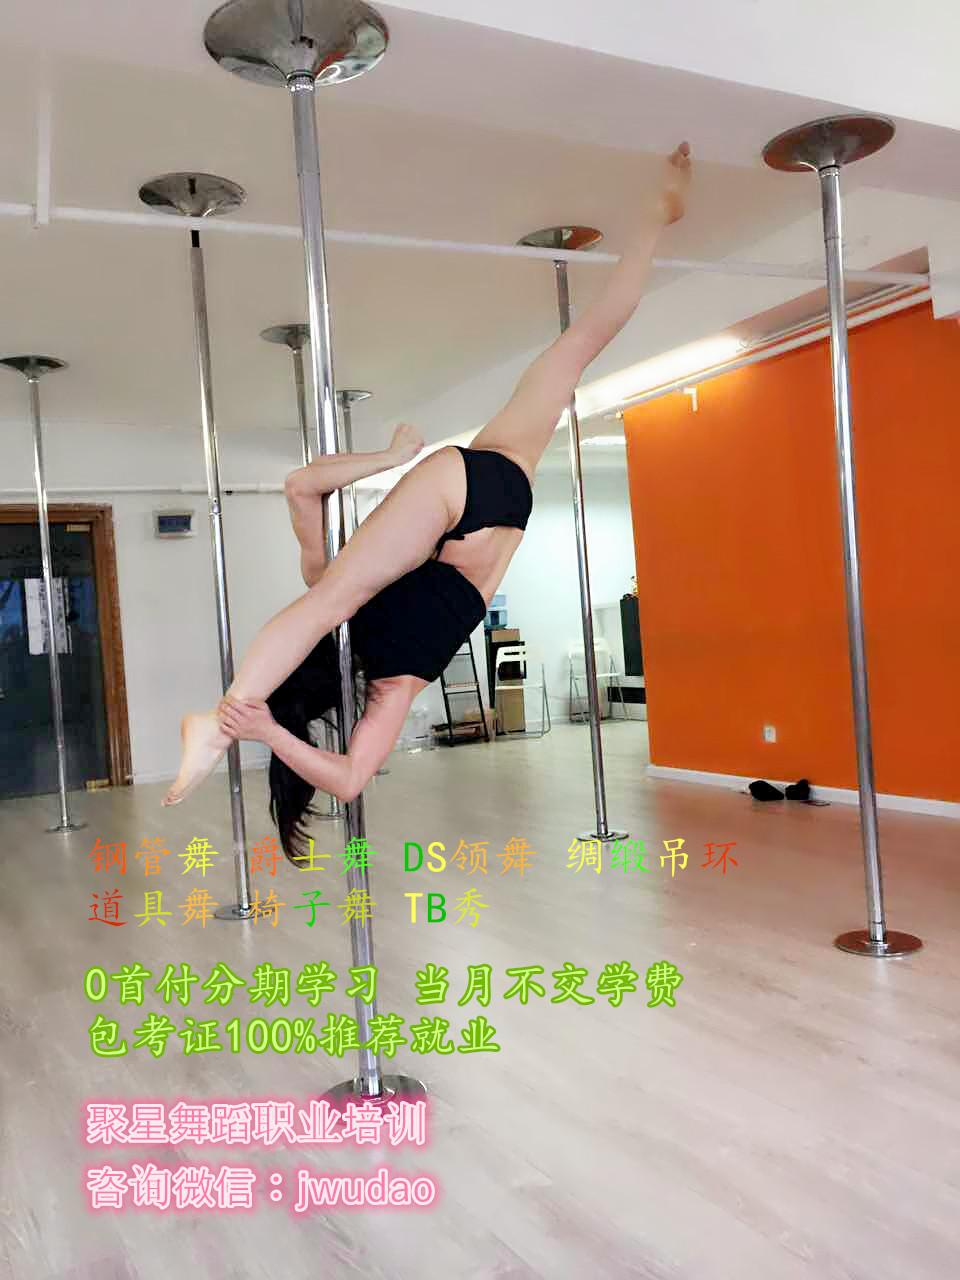 广元钢管舞**教练培训 聚星舞蹈学校